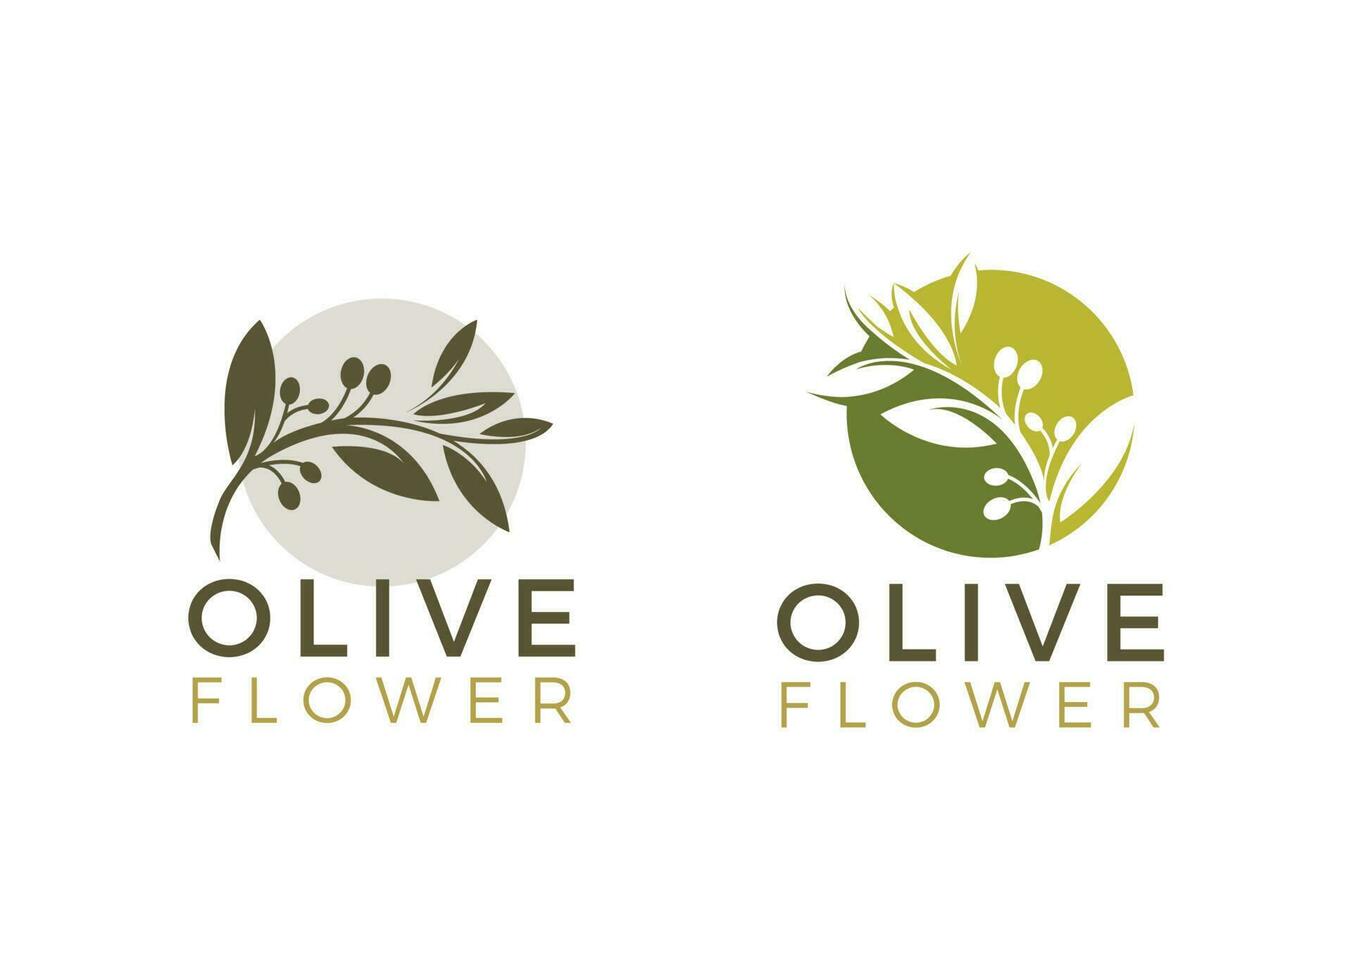 natuur kruiden olijf- olie plant, olijf- blad bloem logo ontwerp vector